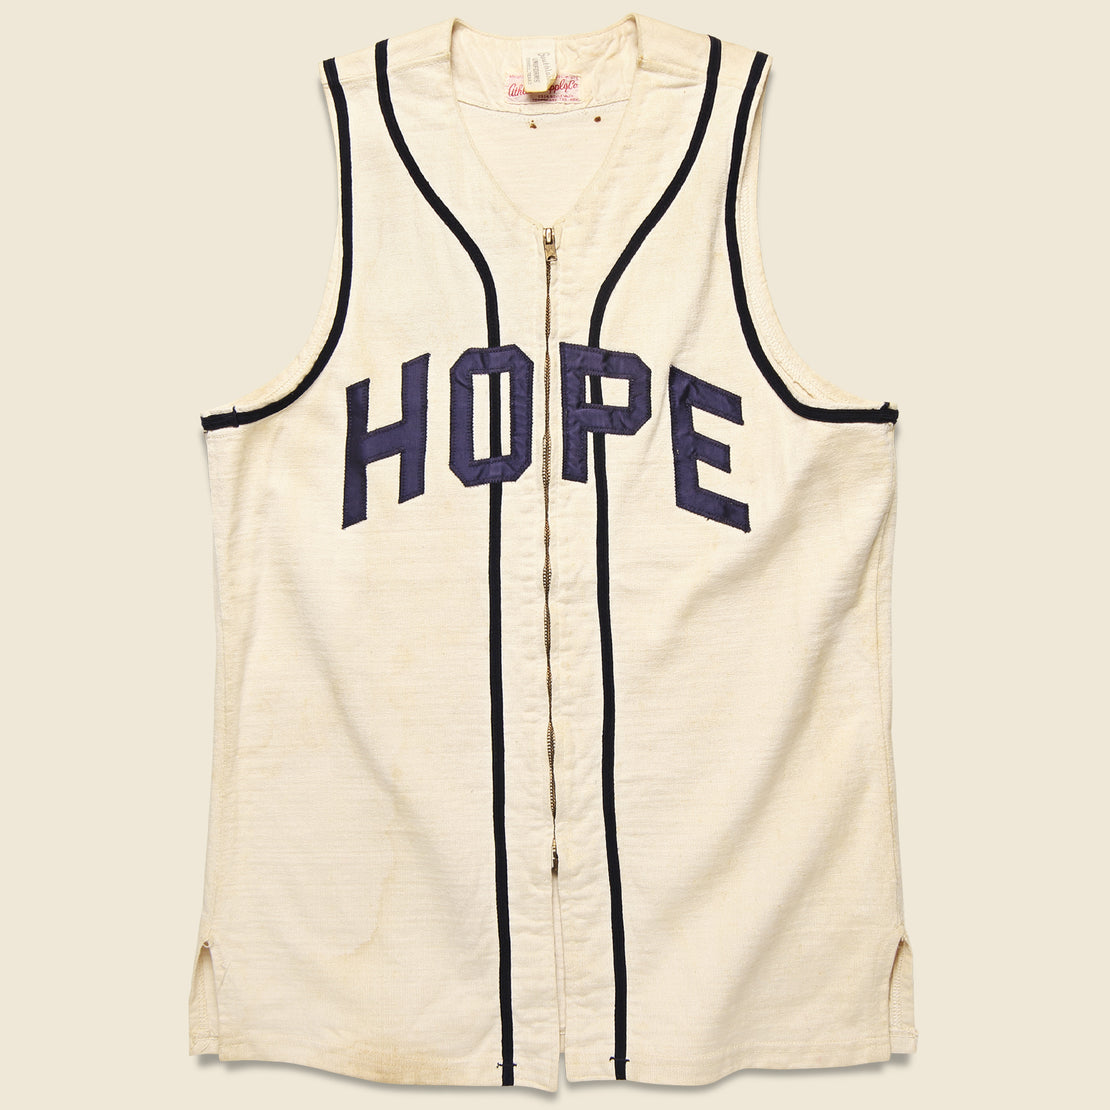 Vintage Hope Zip Up Jersey - Cream